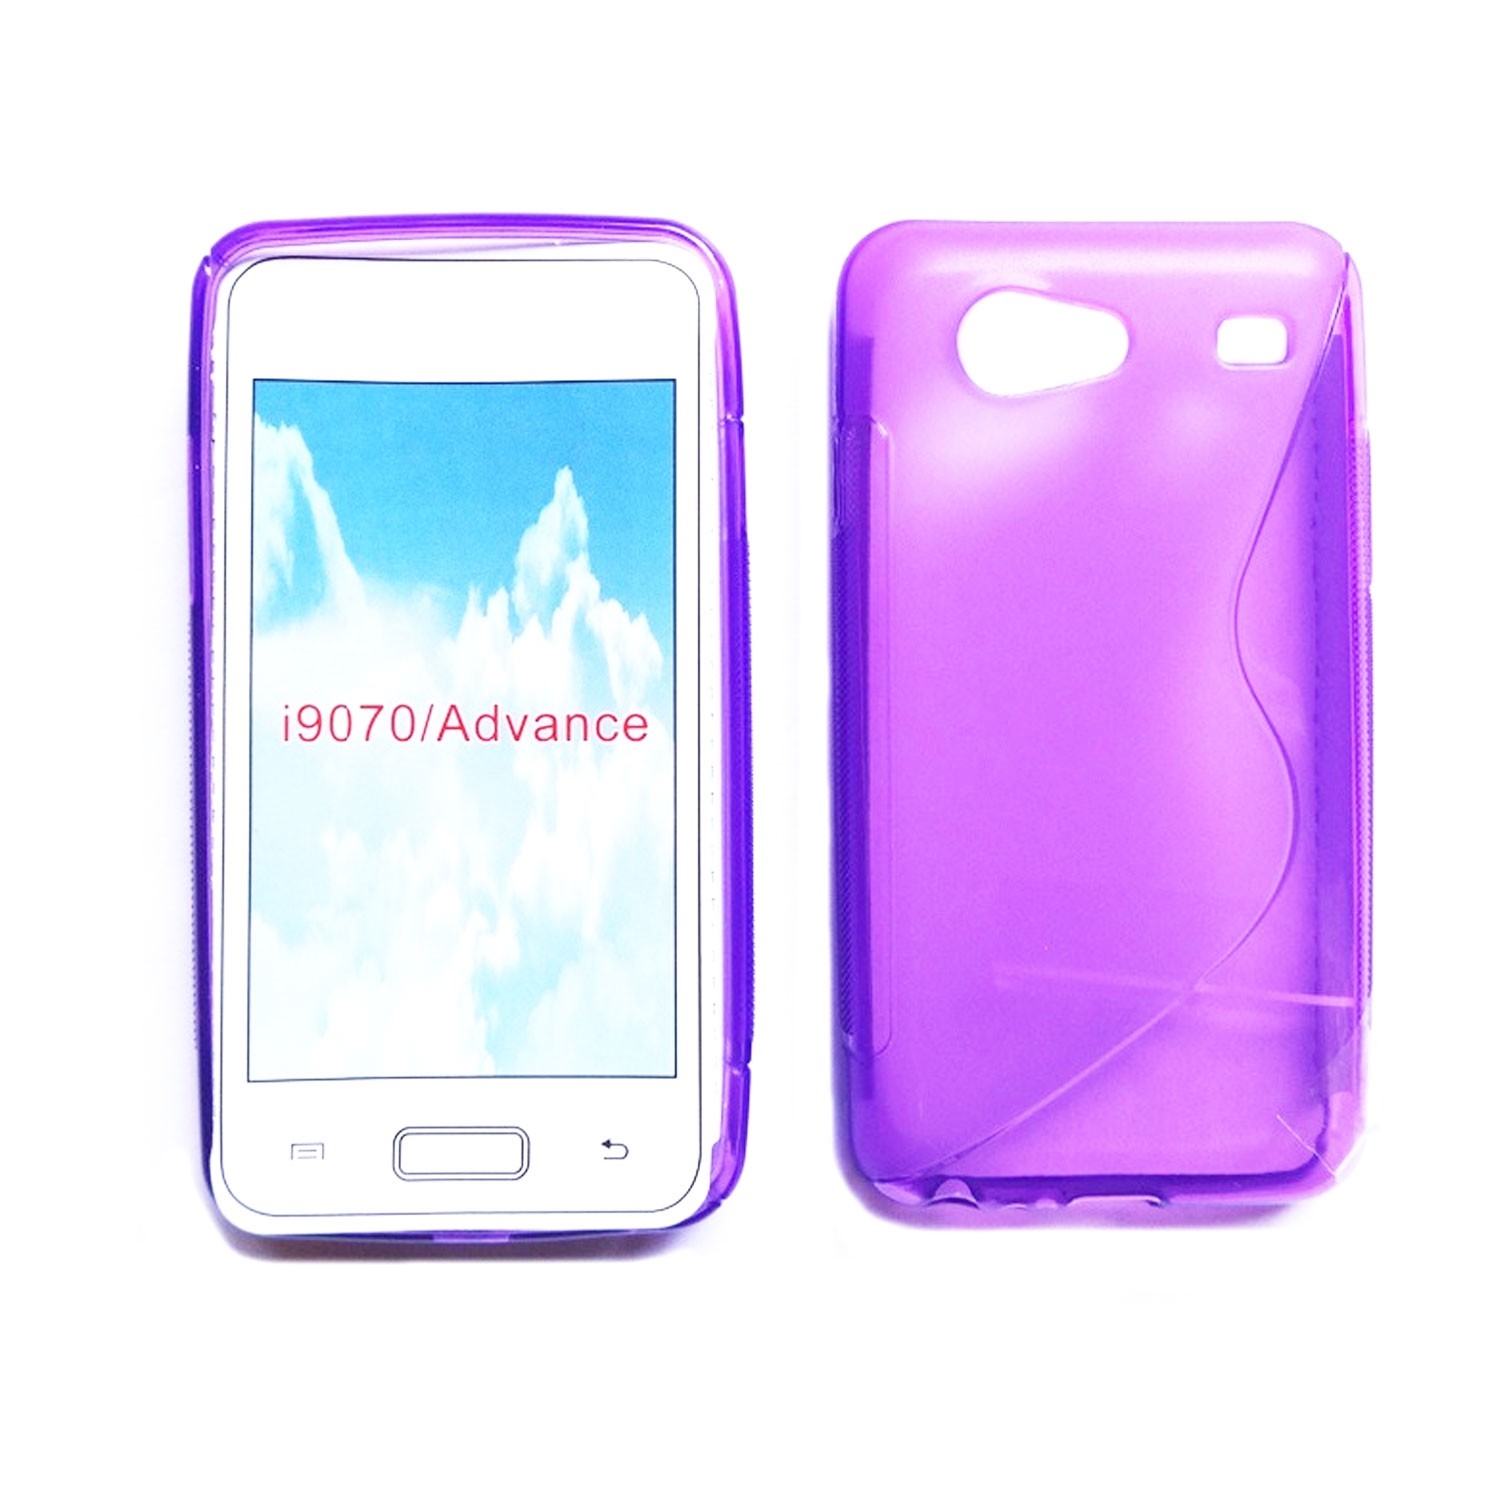 Silicone Case S-Line for Samsung Galaxy S i9070 advance - Purple